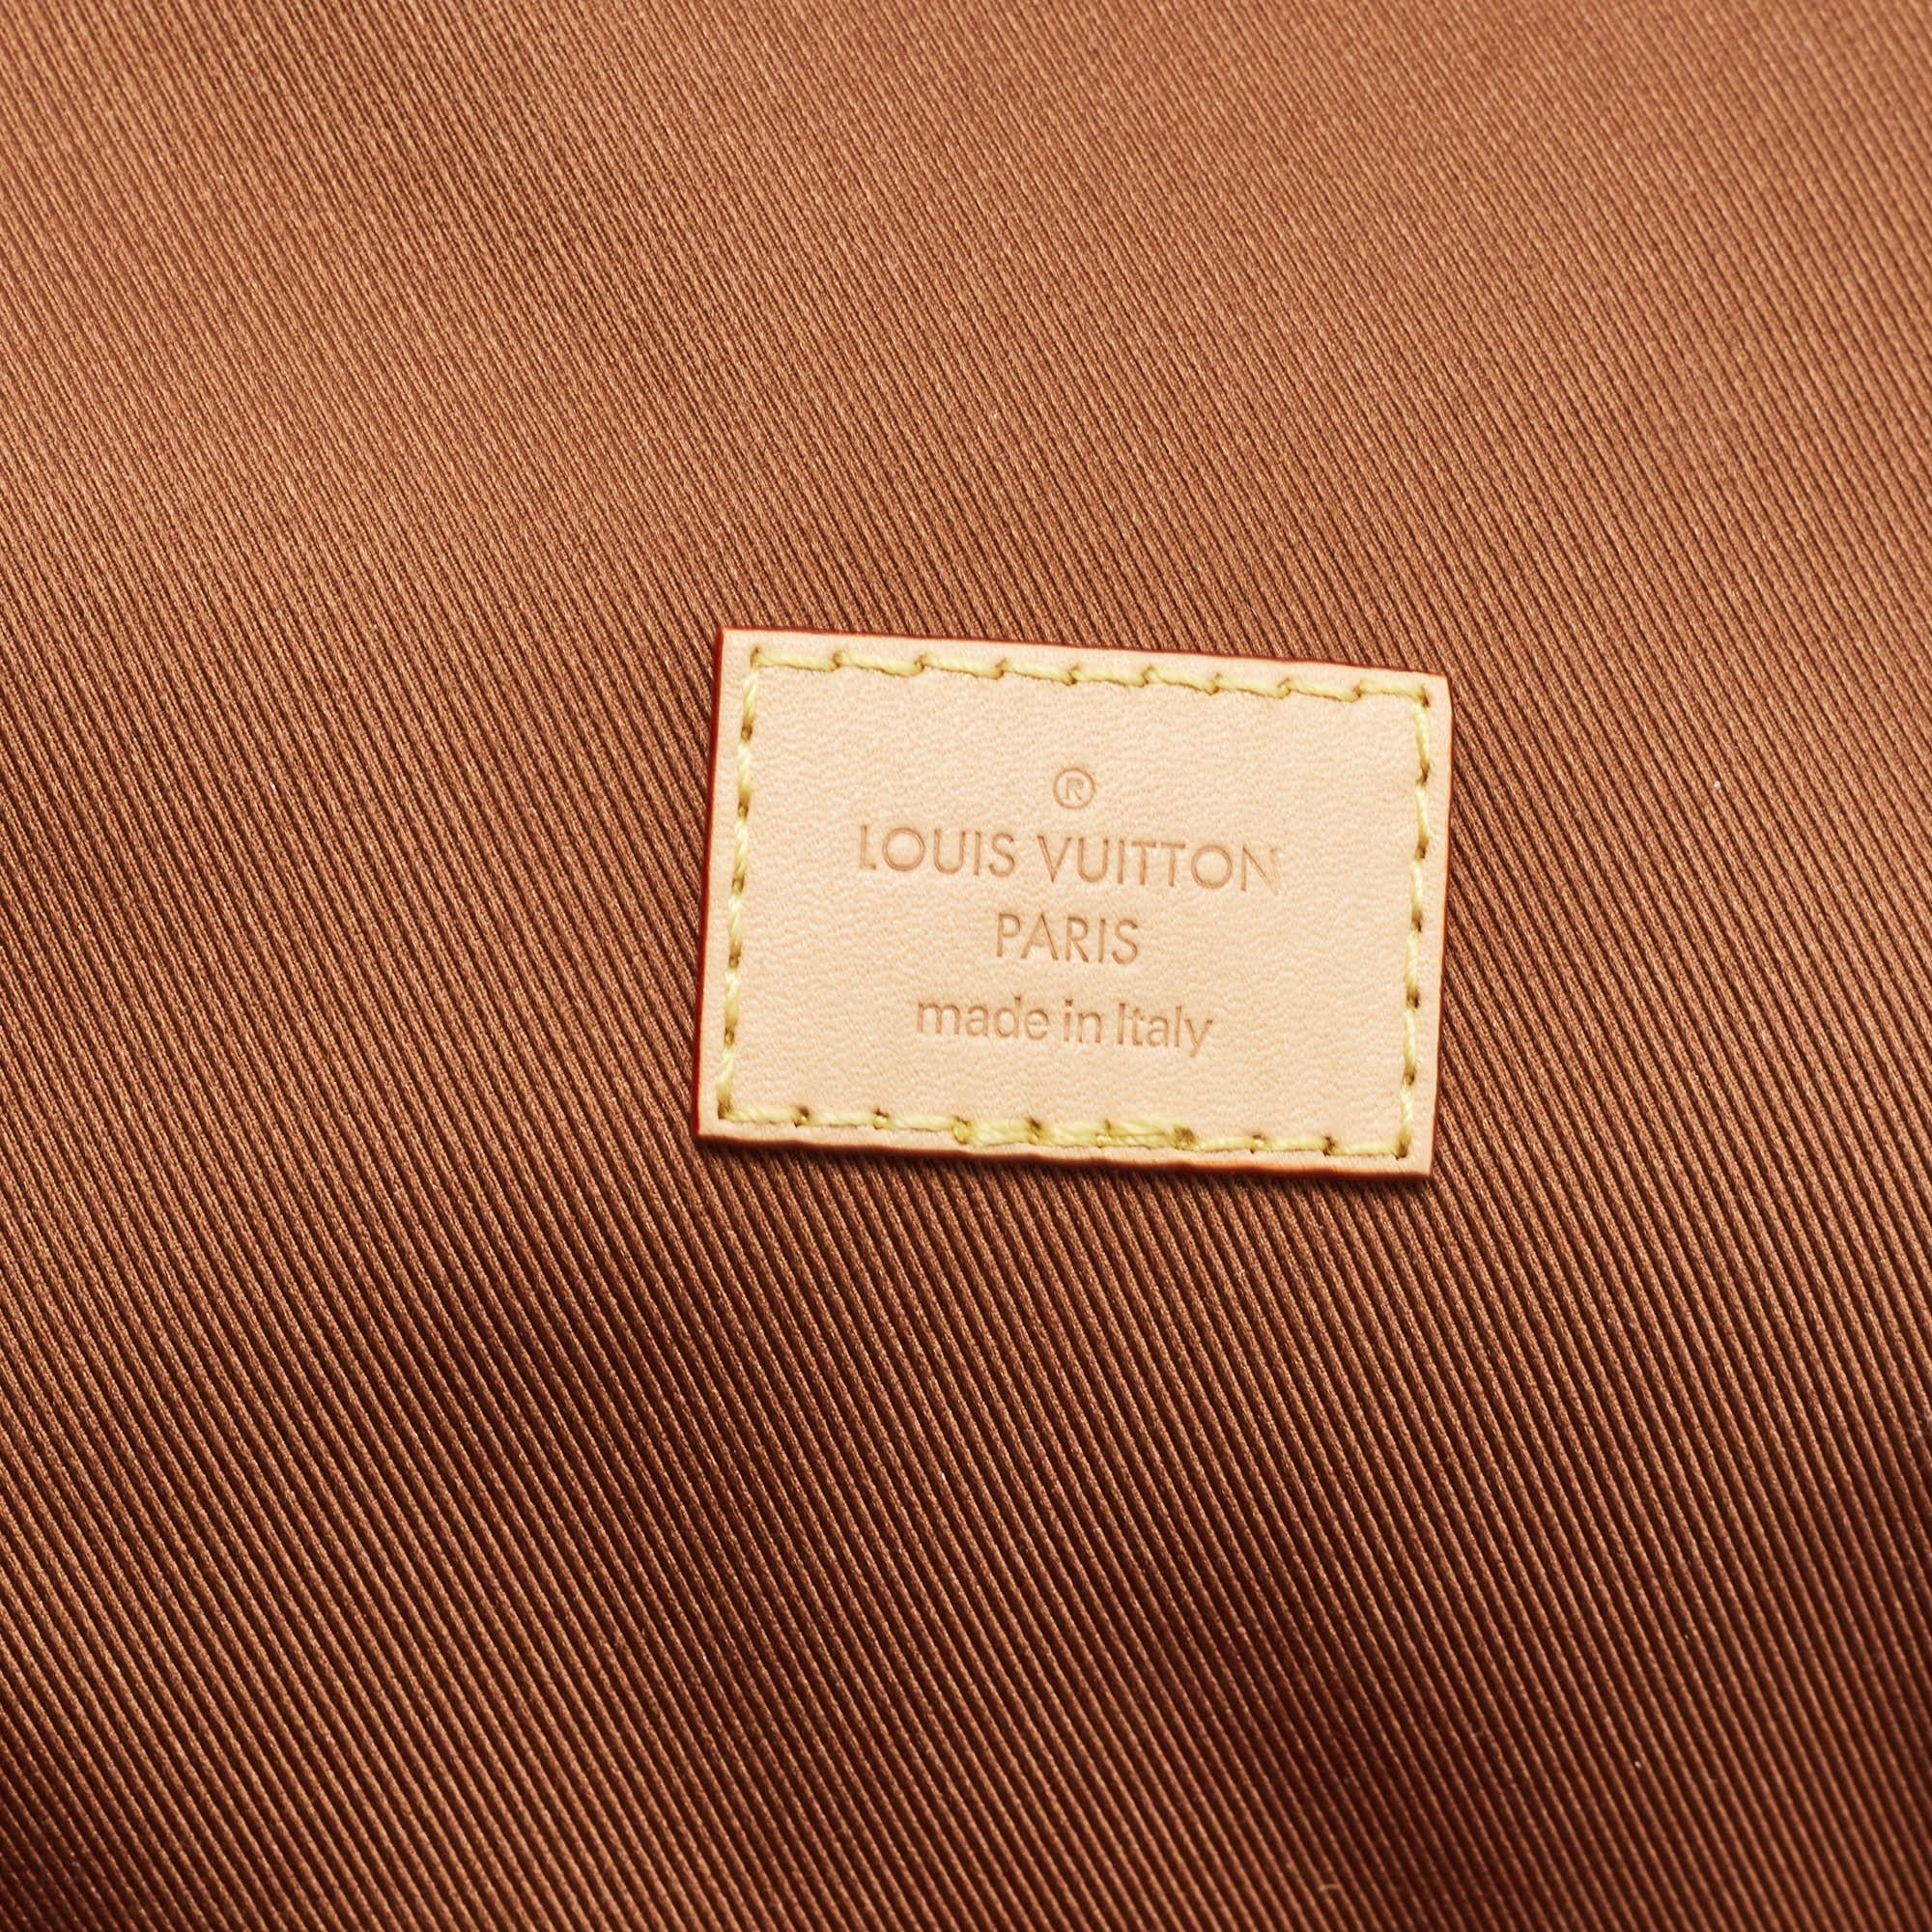 Louis Vuitton Monogram Canvas Packing Cube Case For Sale 3